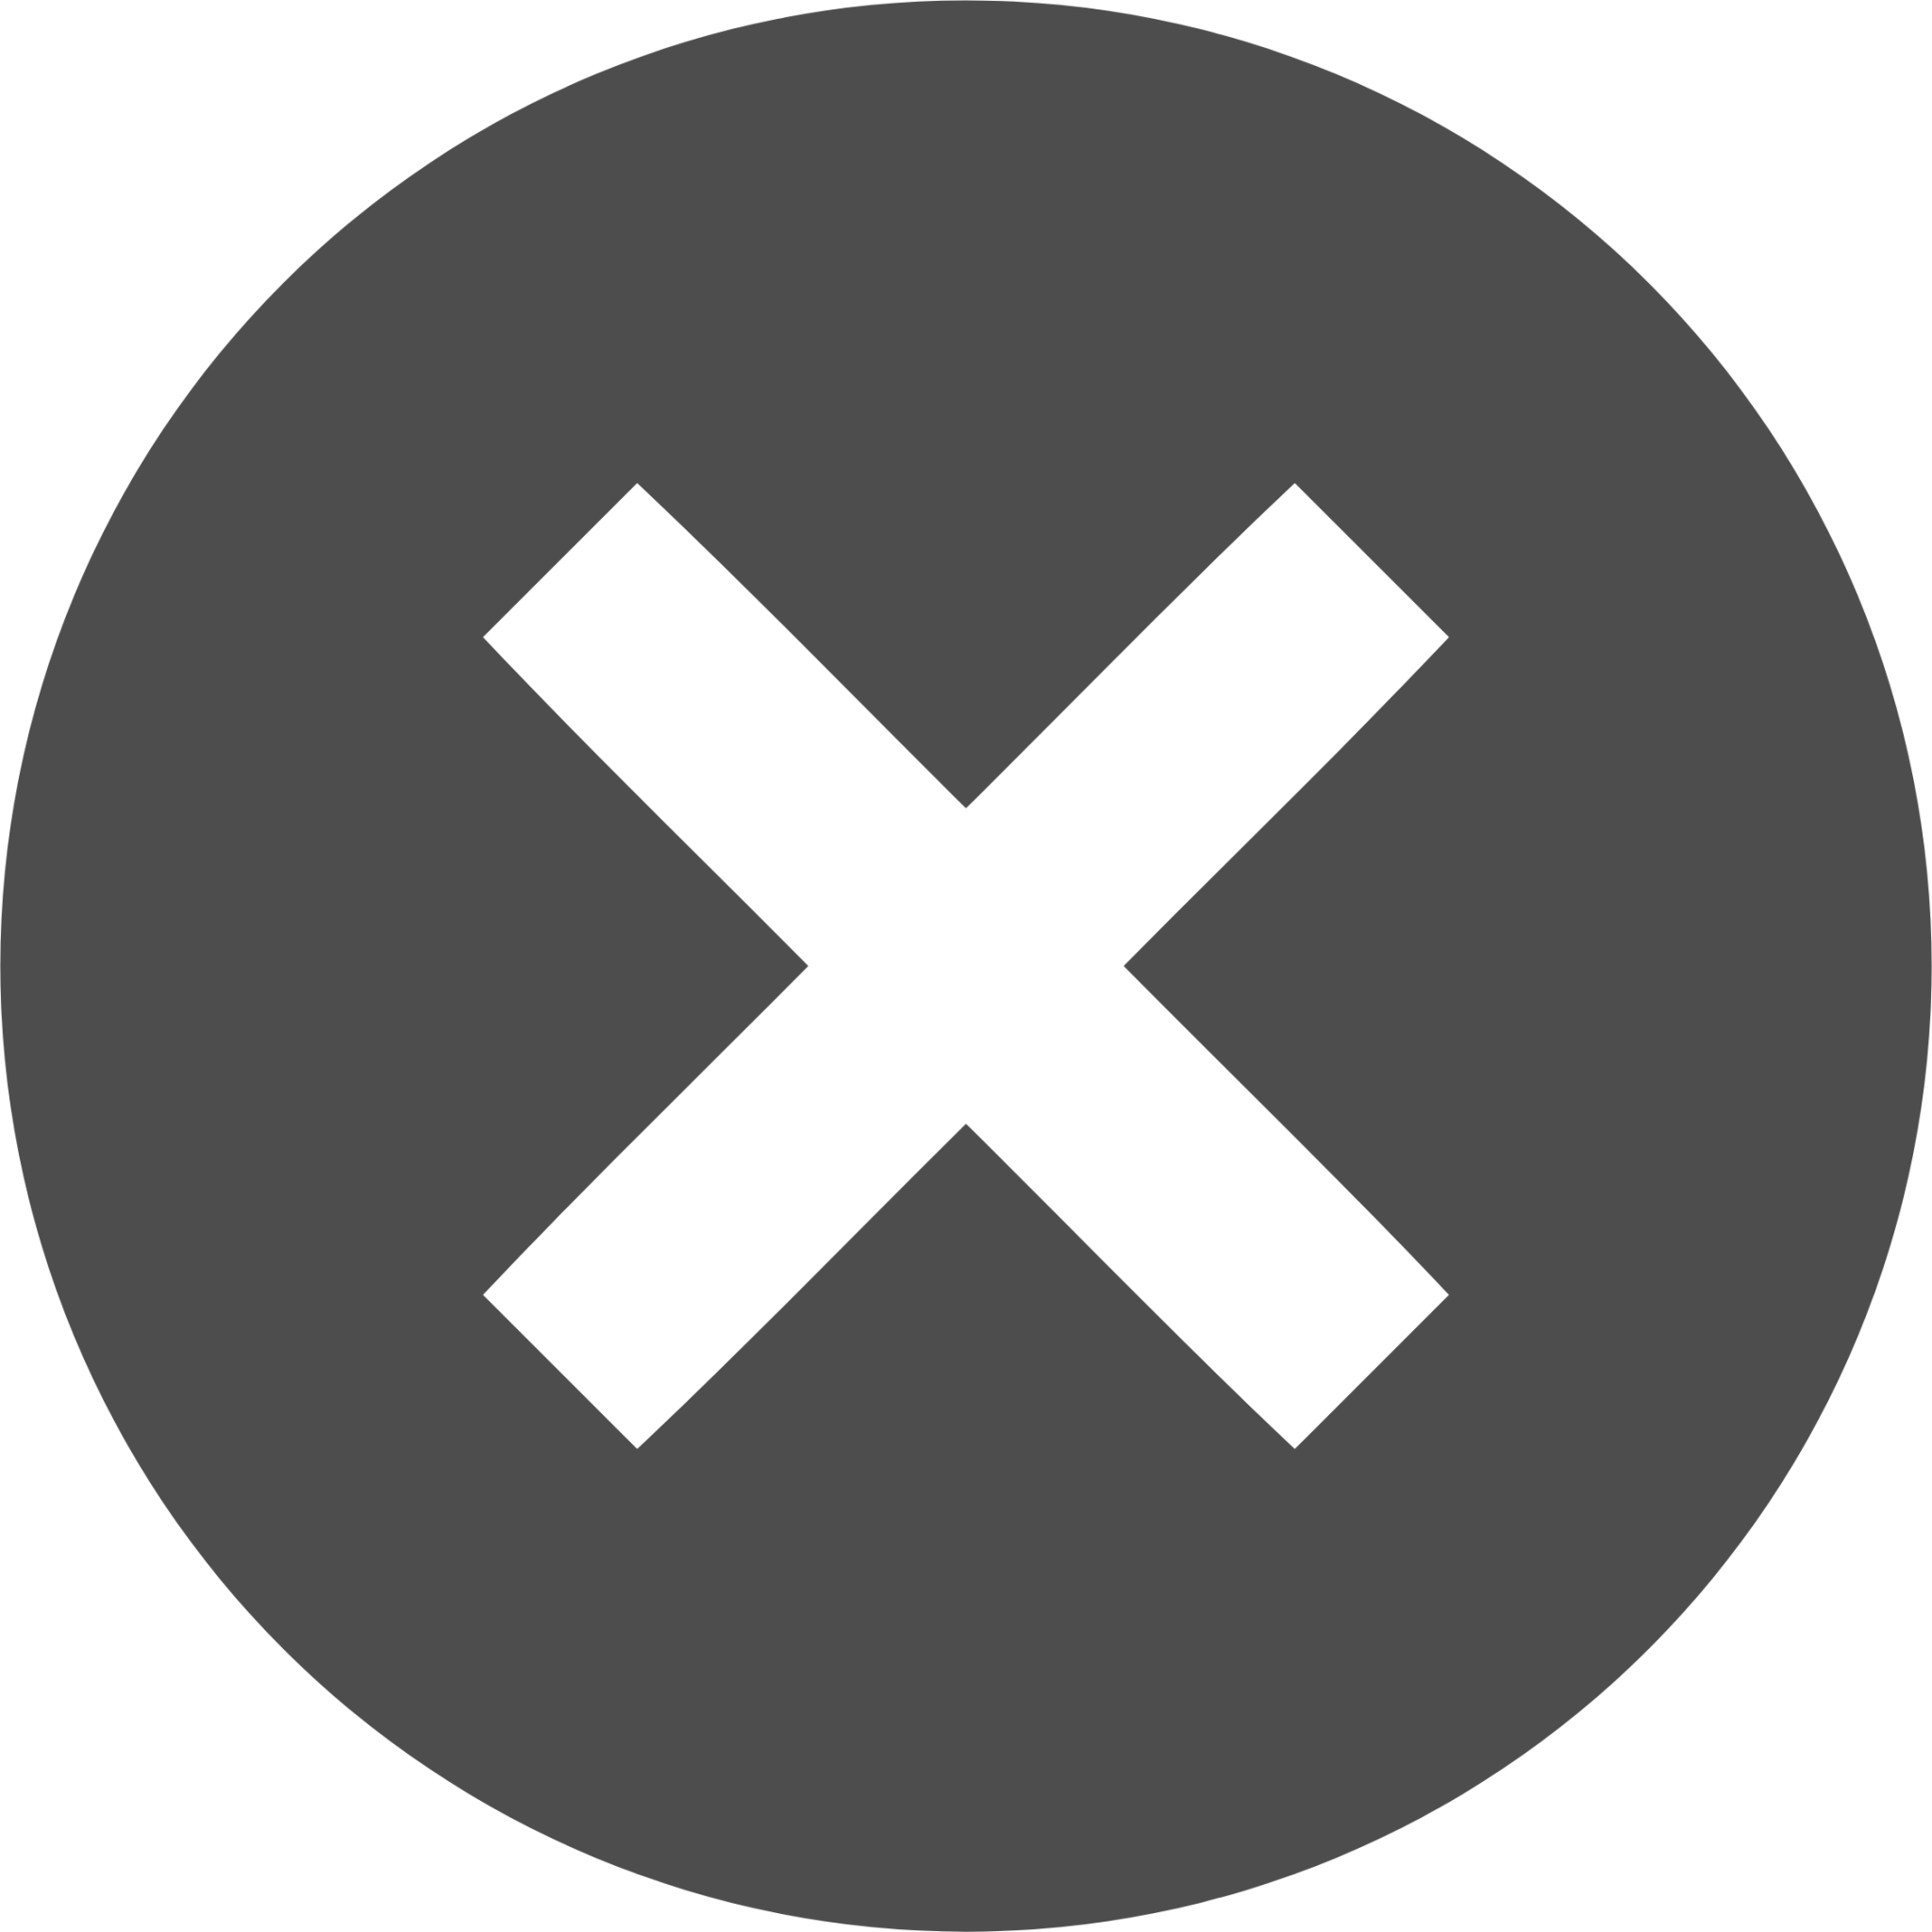 emblem noread icon